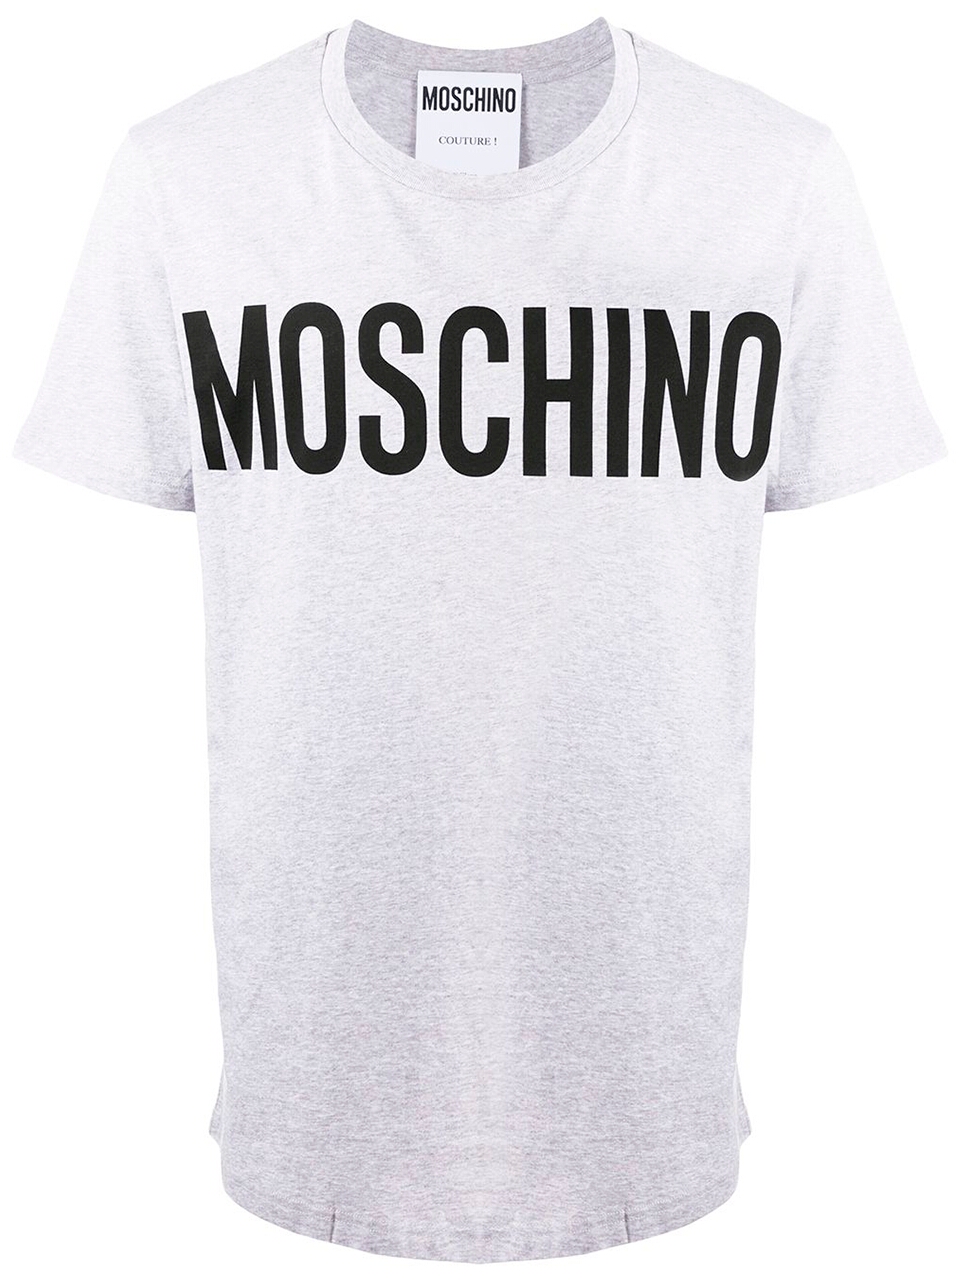 Imagem de: Camiseta Moschino Cinza com Logo Preto